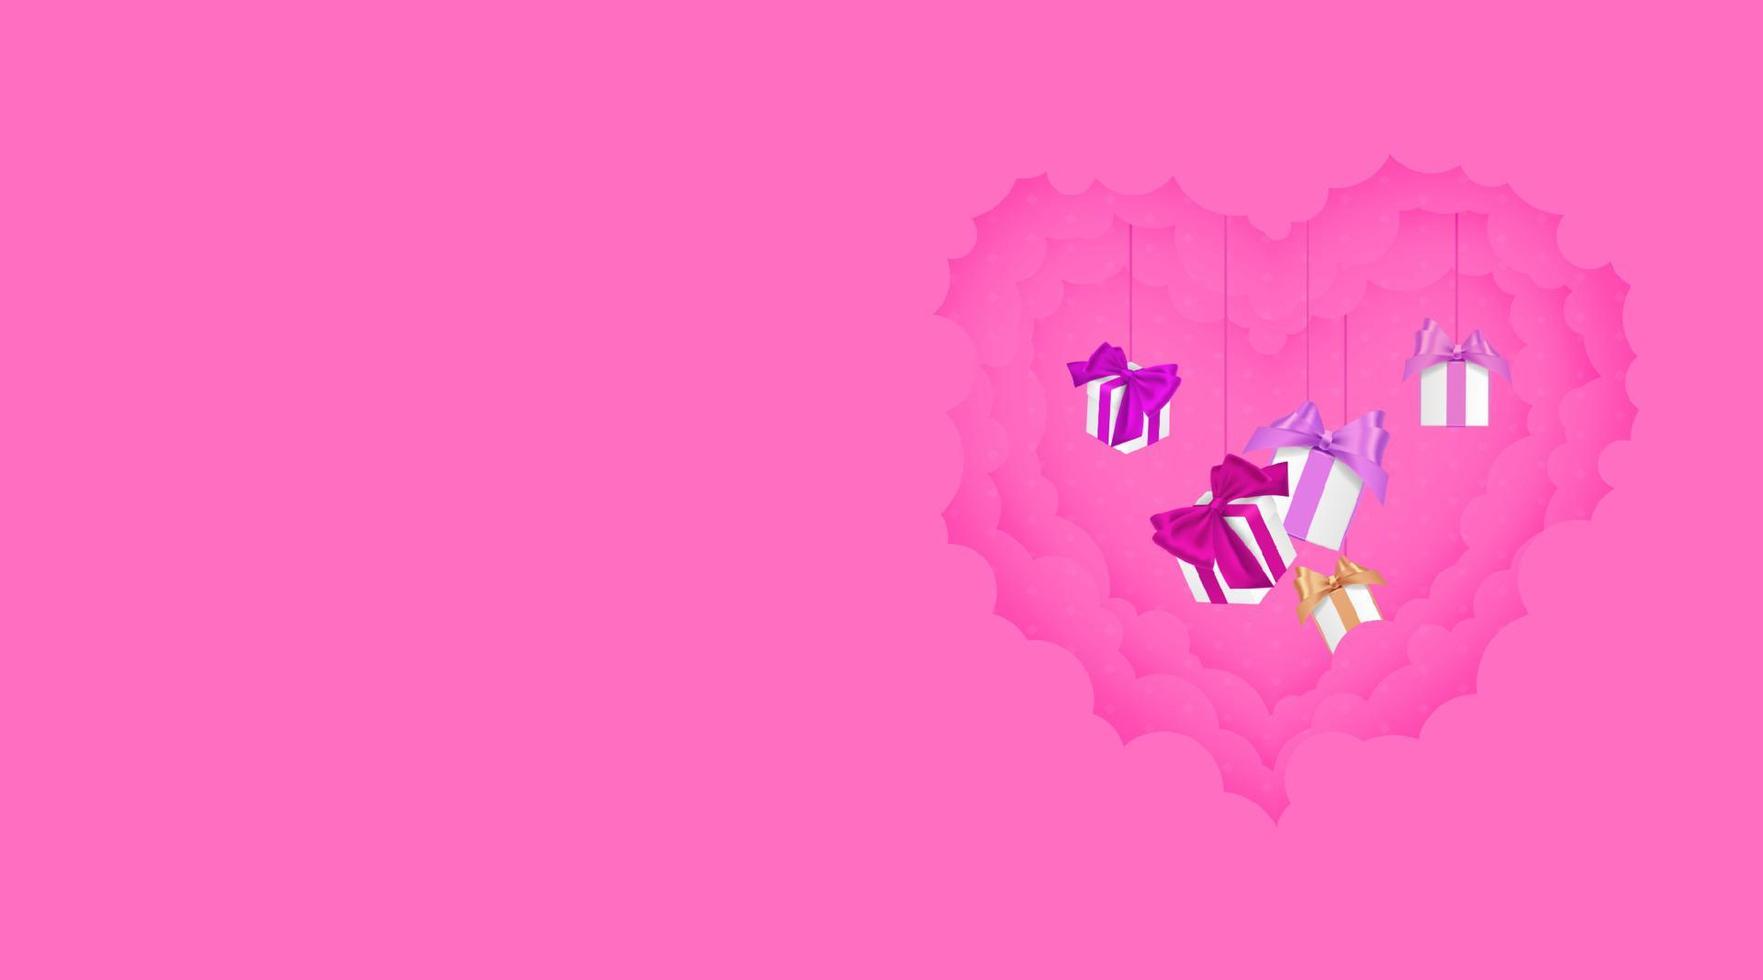 papel cortado em forma de coração design 3d ilustração vetorial amor, 8 de março e dia dos namorados da nuvem de estilo de papel com presente nas nuvens. estilo de corte de papel. ilustração em vetor rosa